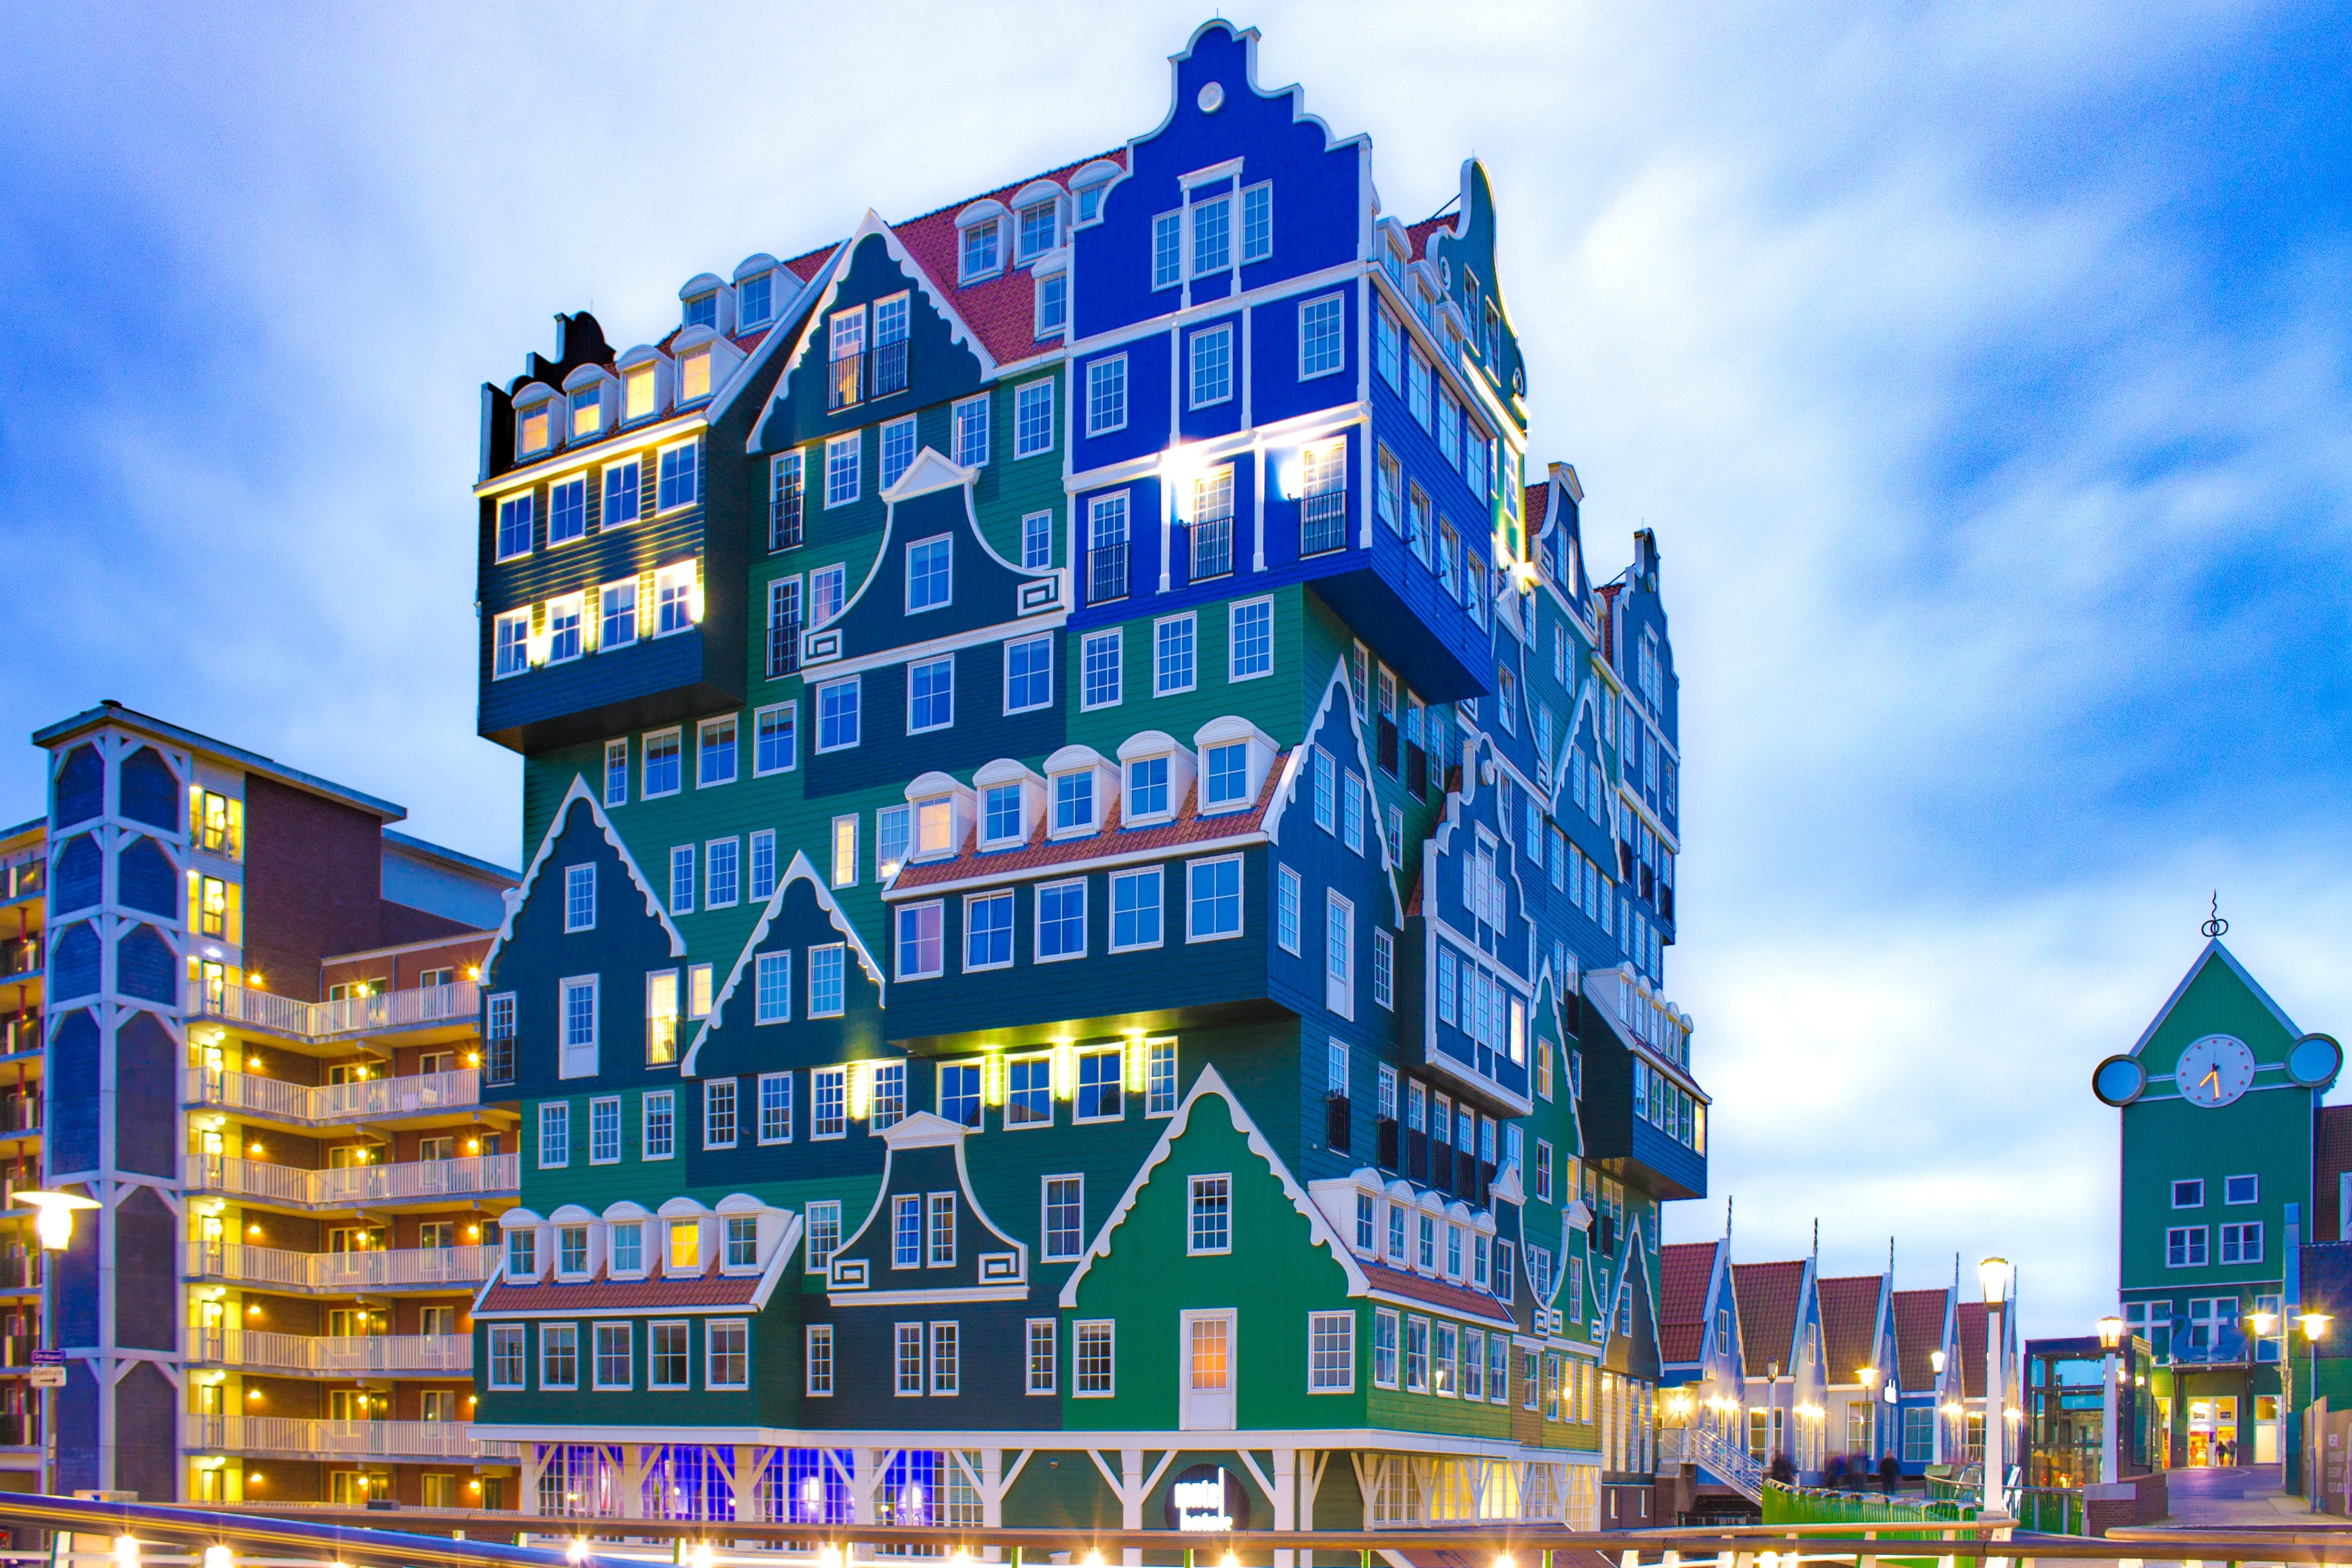 Hotel Inntel in Zaandam, Netherlands 